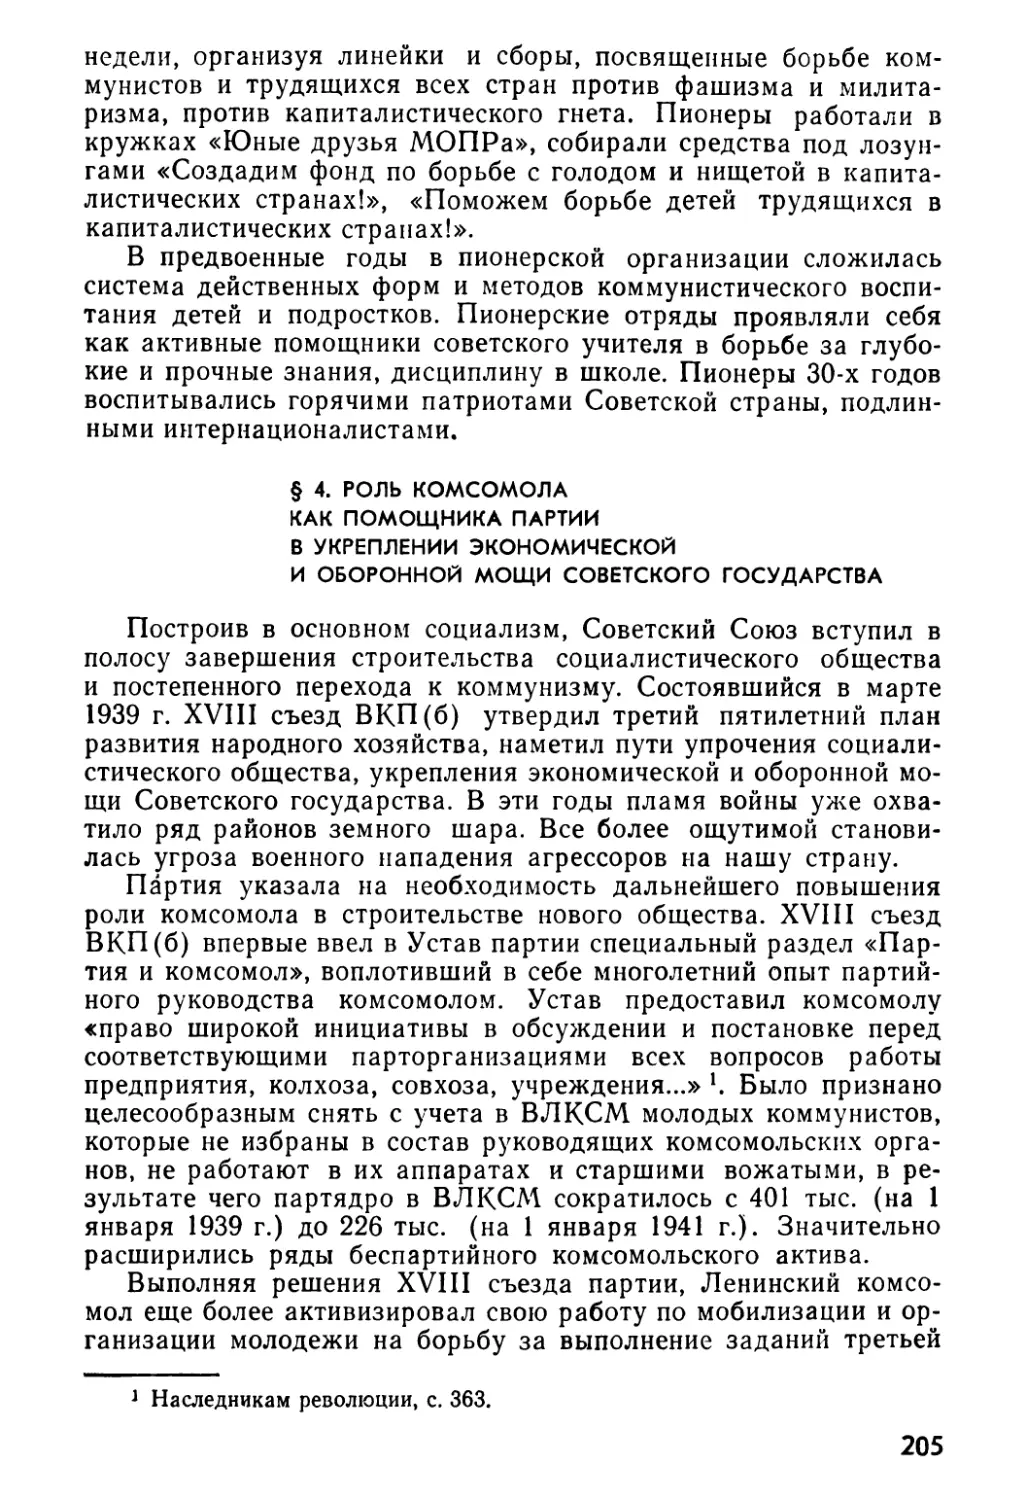 § 4. Роль комсомола как помощника партии в укреплении экономической и оборонной мощи Советского государства